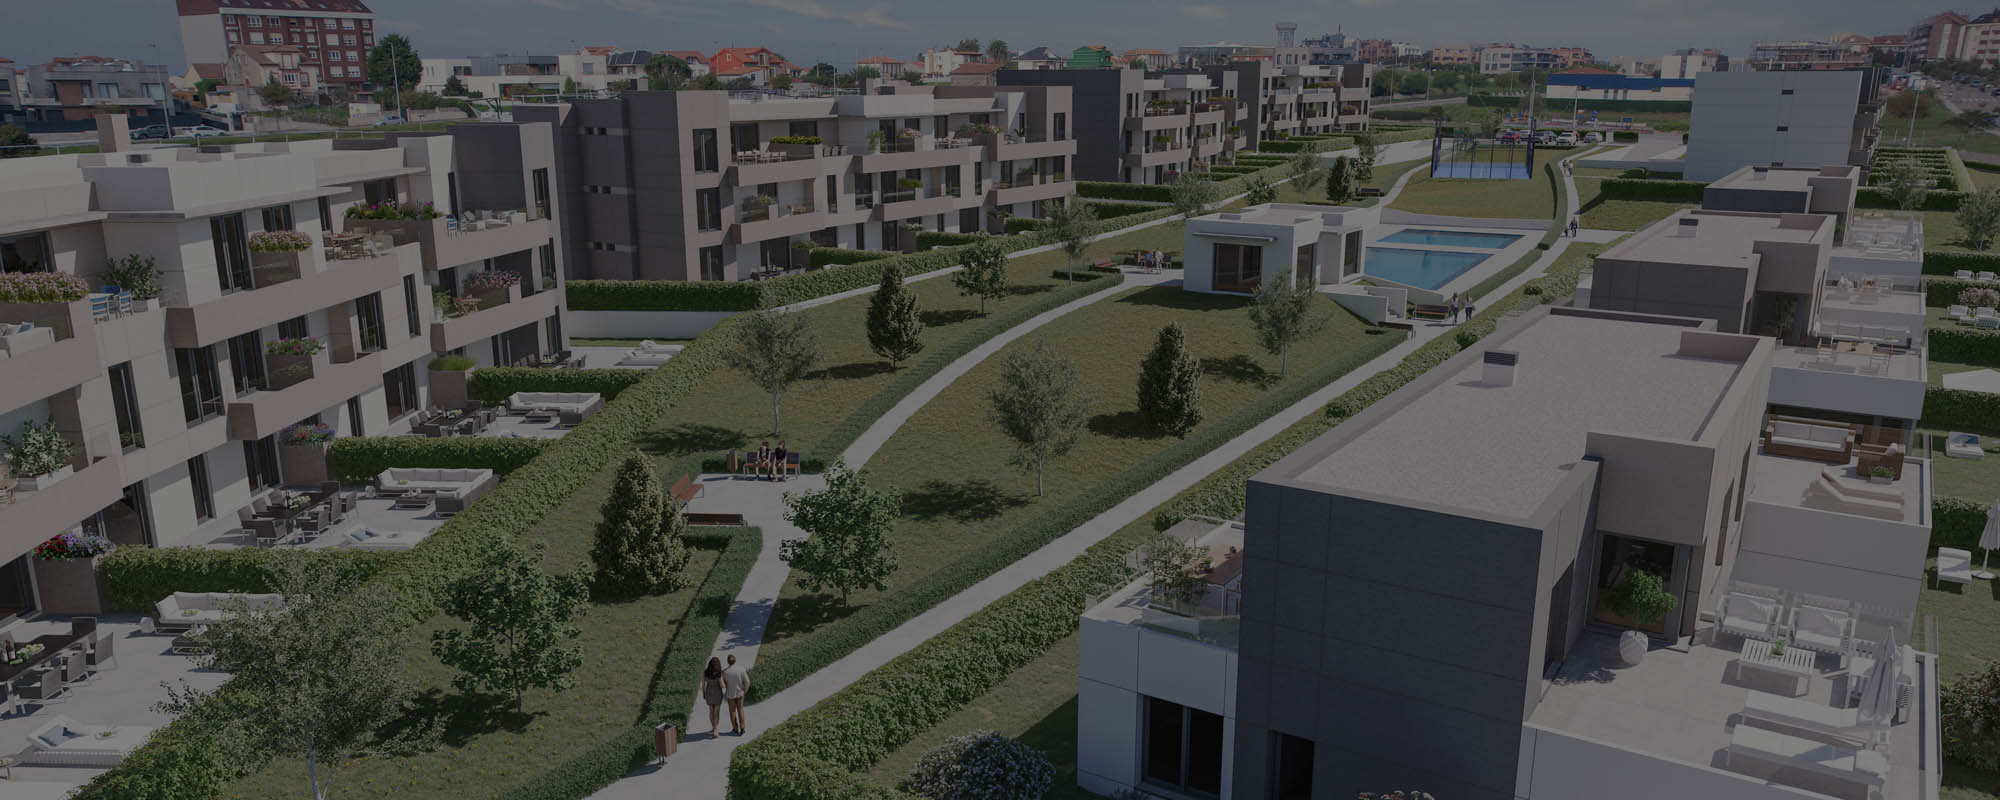 Renders 3D y vídeo de una urbanización residencial en Santander